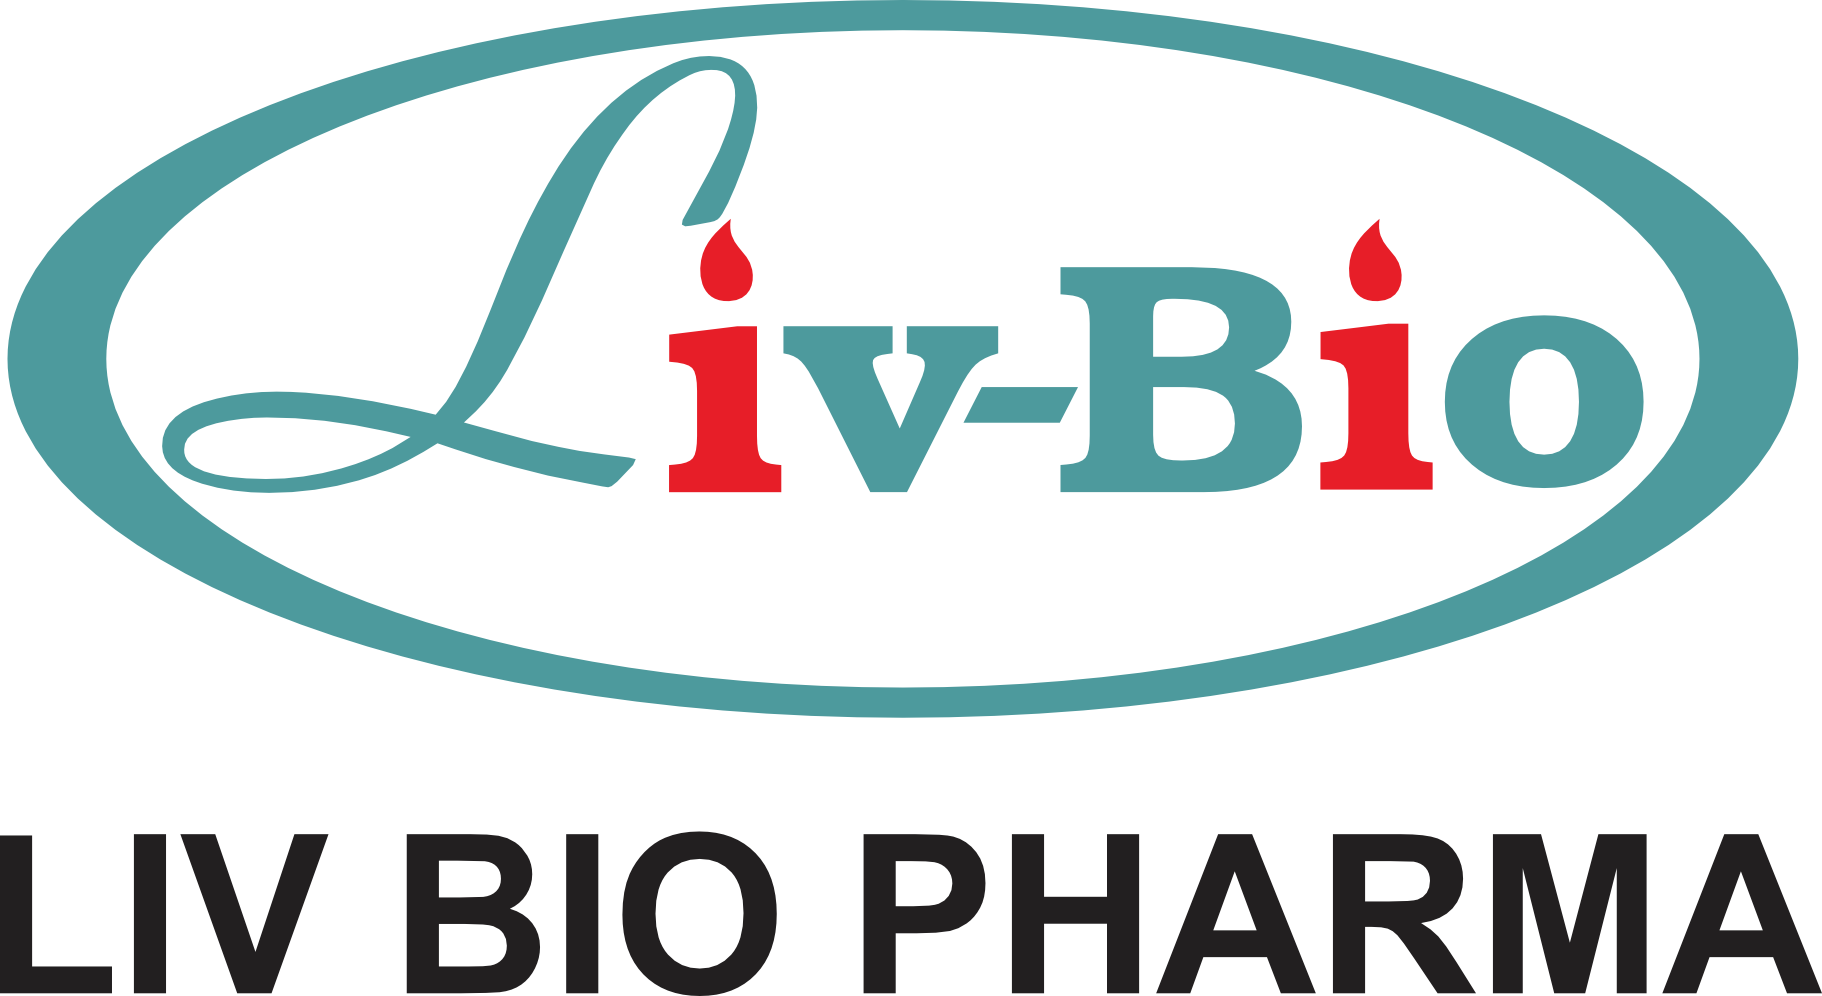 The logo of Livbio